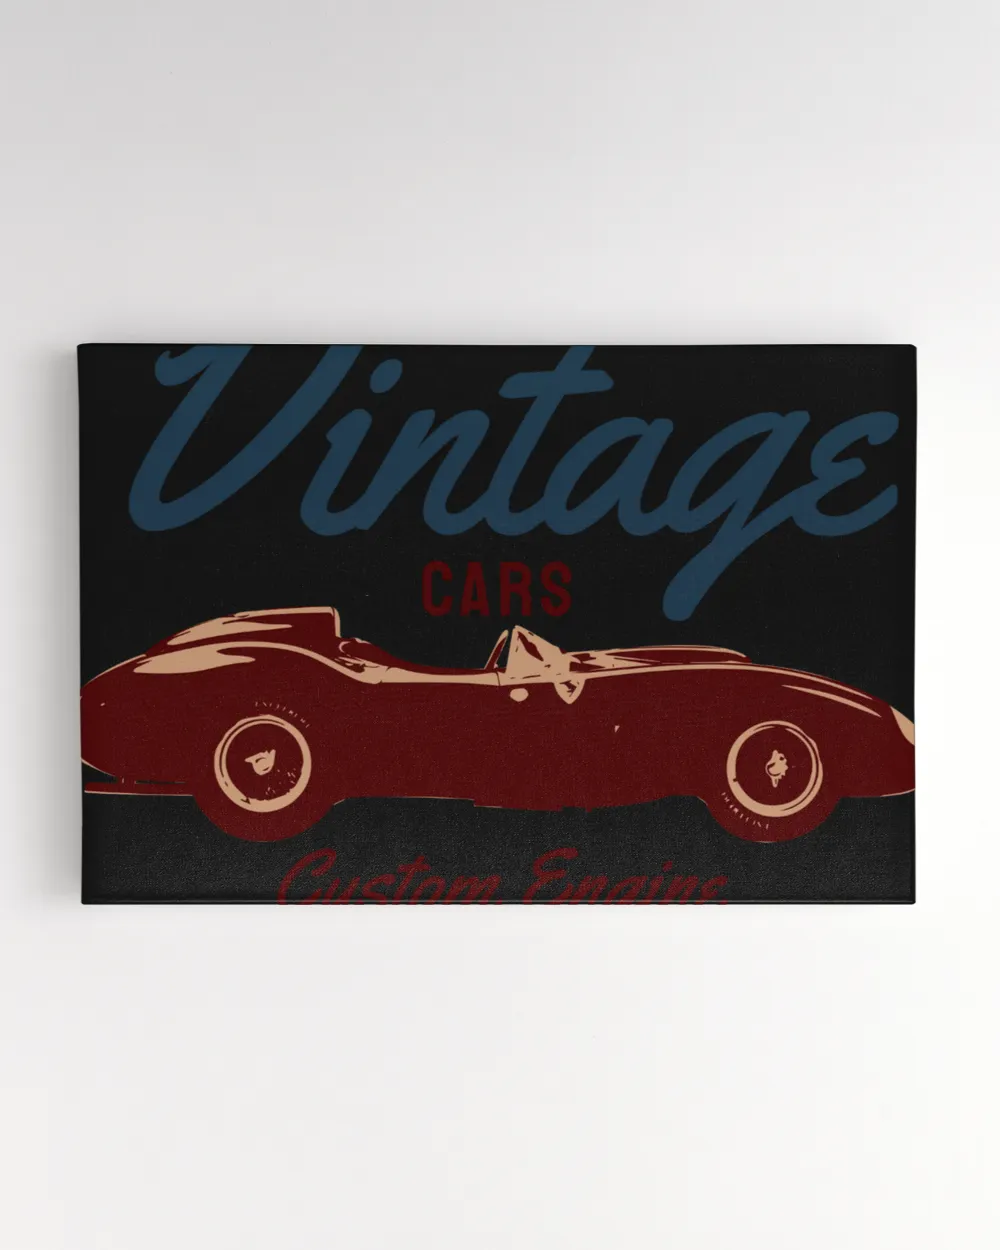 Vintage Cars Custom Engine Retro Vintage